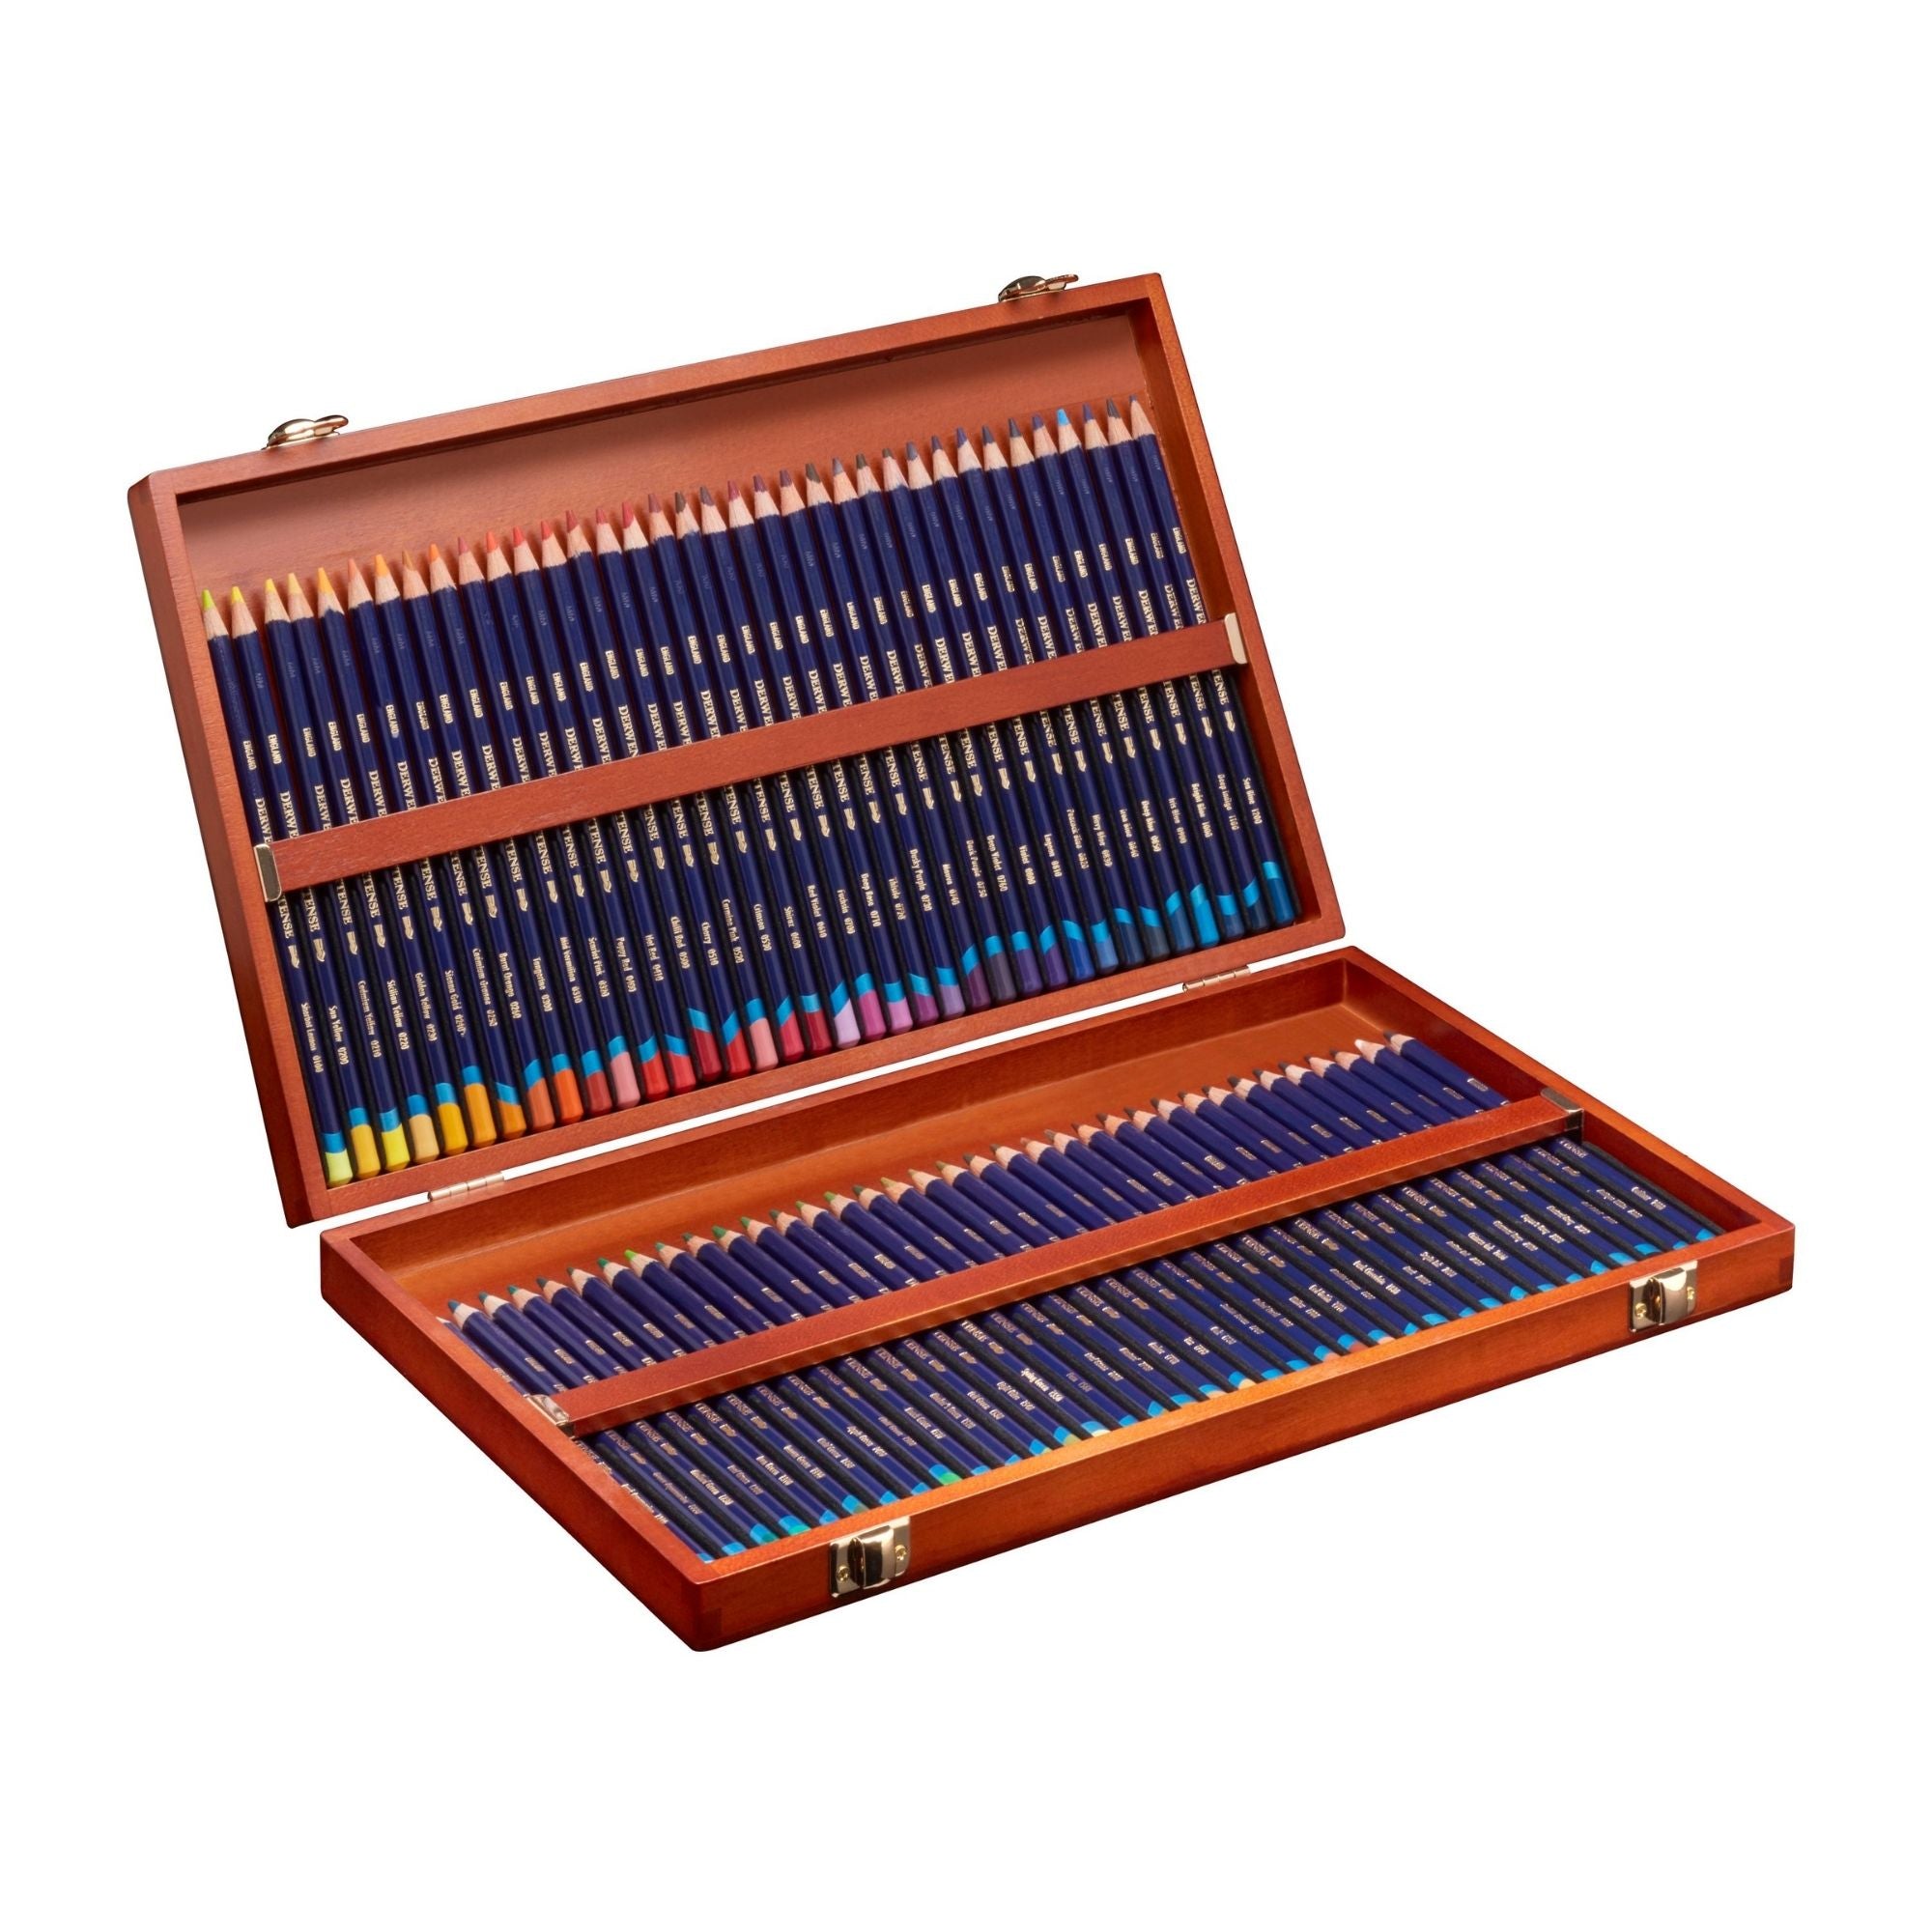 Derwent Inktense Pencils Wooden Box of 72